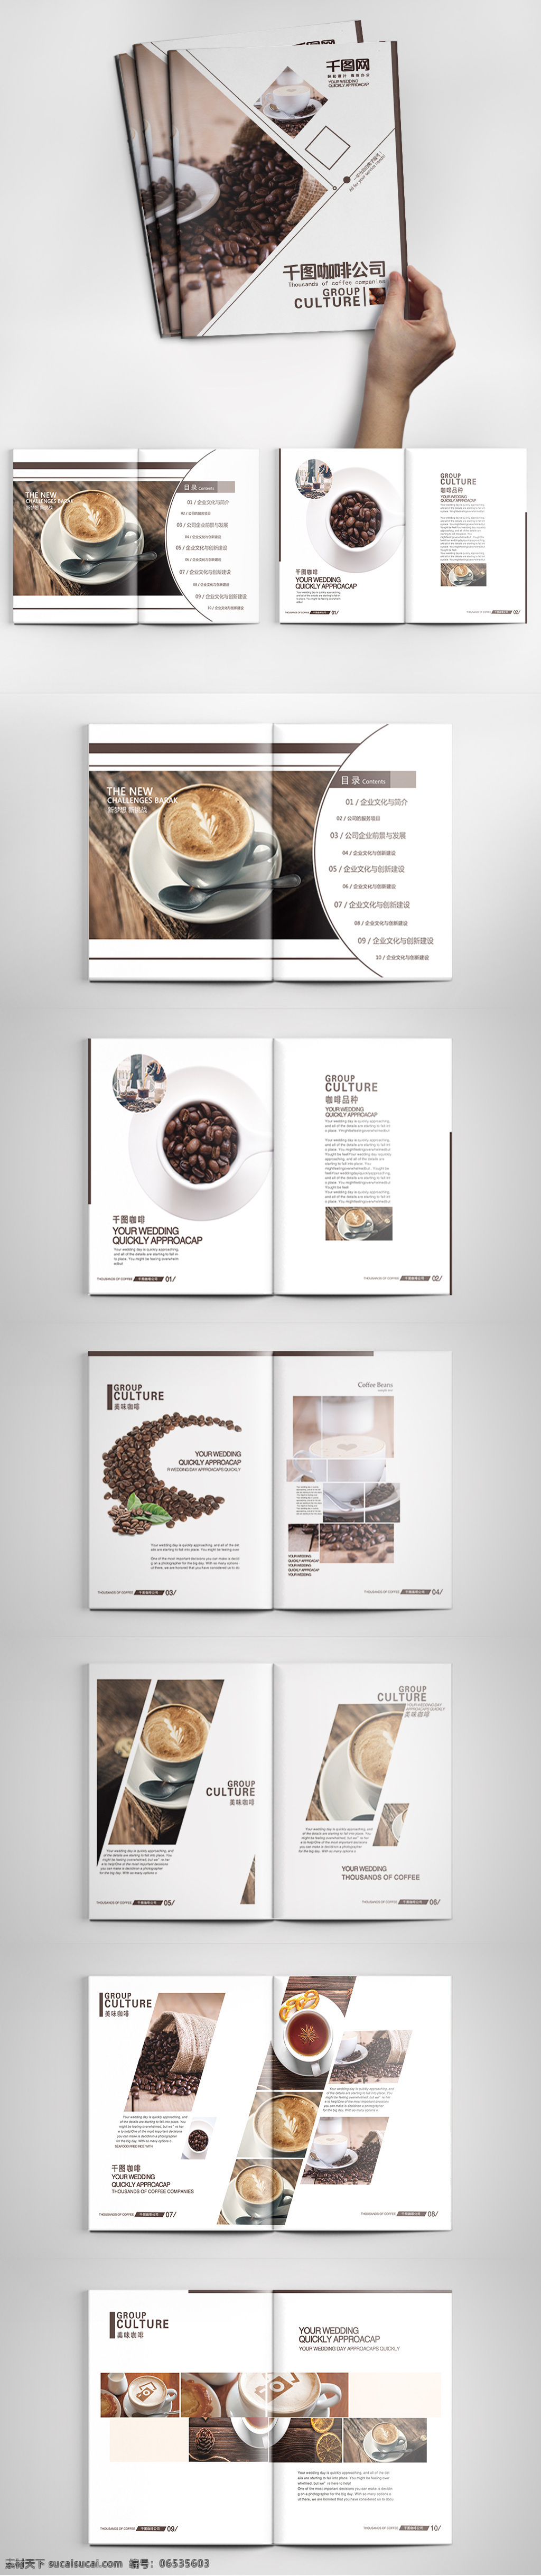 高端 咖啡 褐色 大气 简约 产品 画册 餐饮 咖啡豆 咖啡介绍 美食 品位 西餐